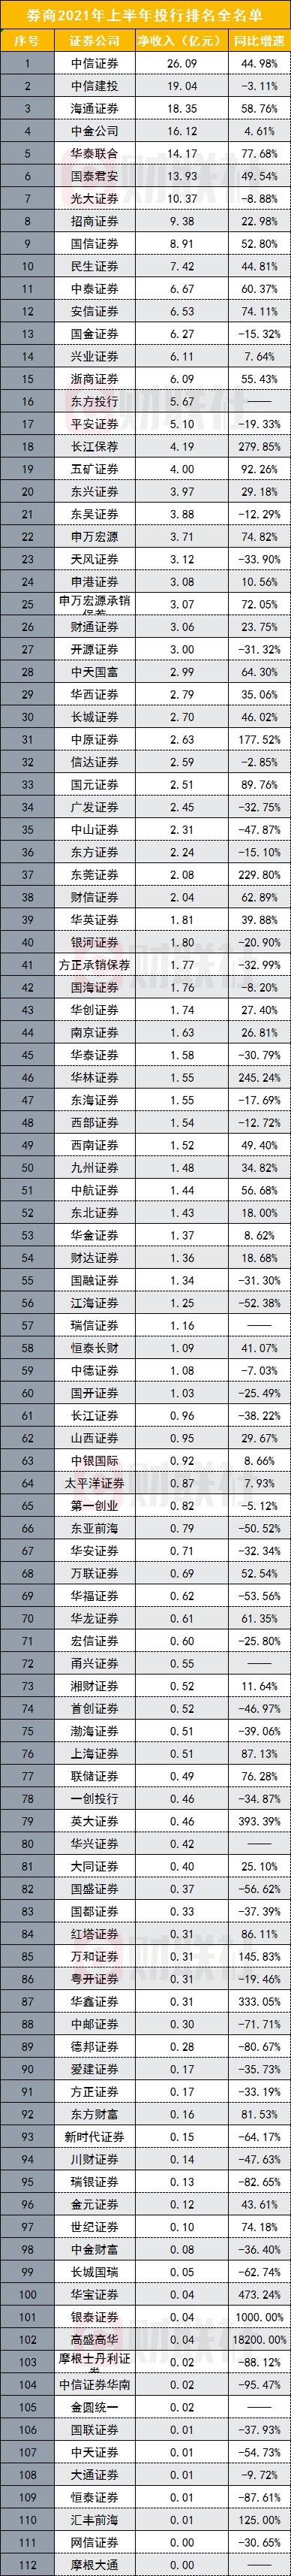 中国排名前十的证券公司